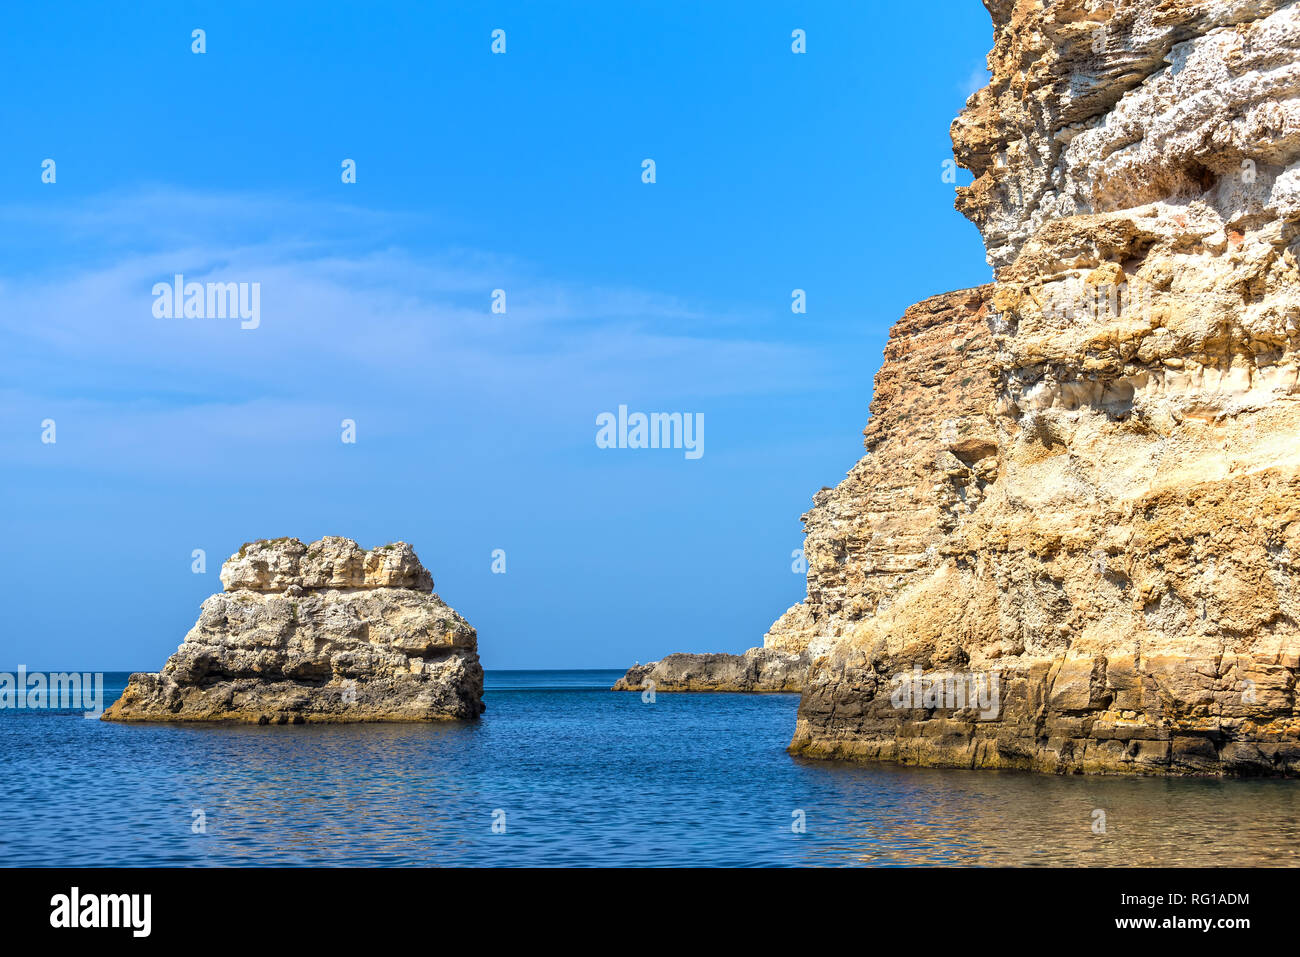 Isla rocosa en el mar cerca de la orilla rocosa Foto de stock